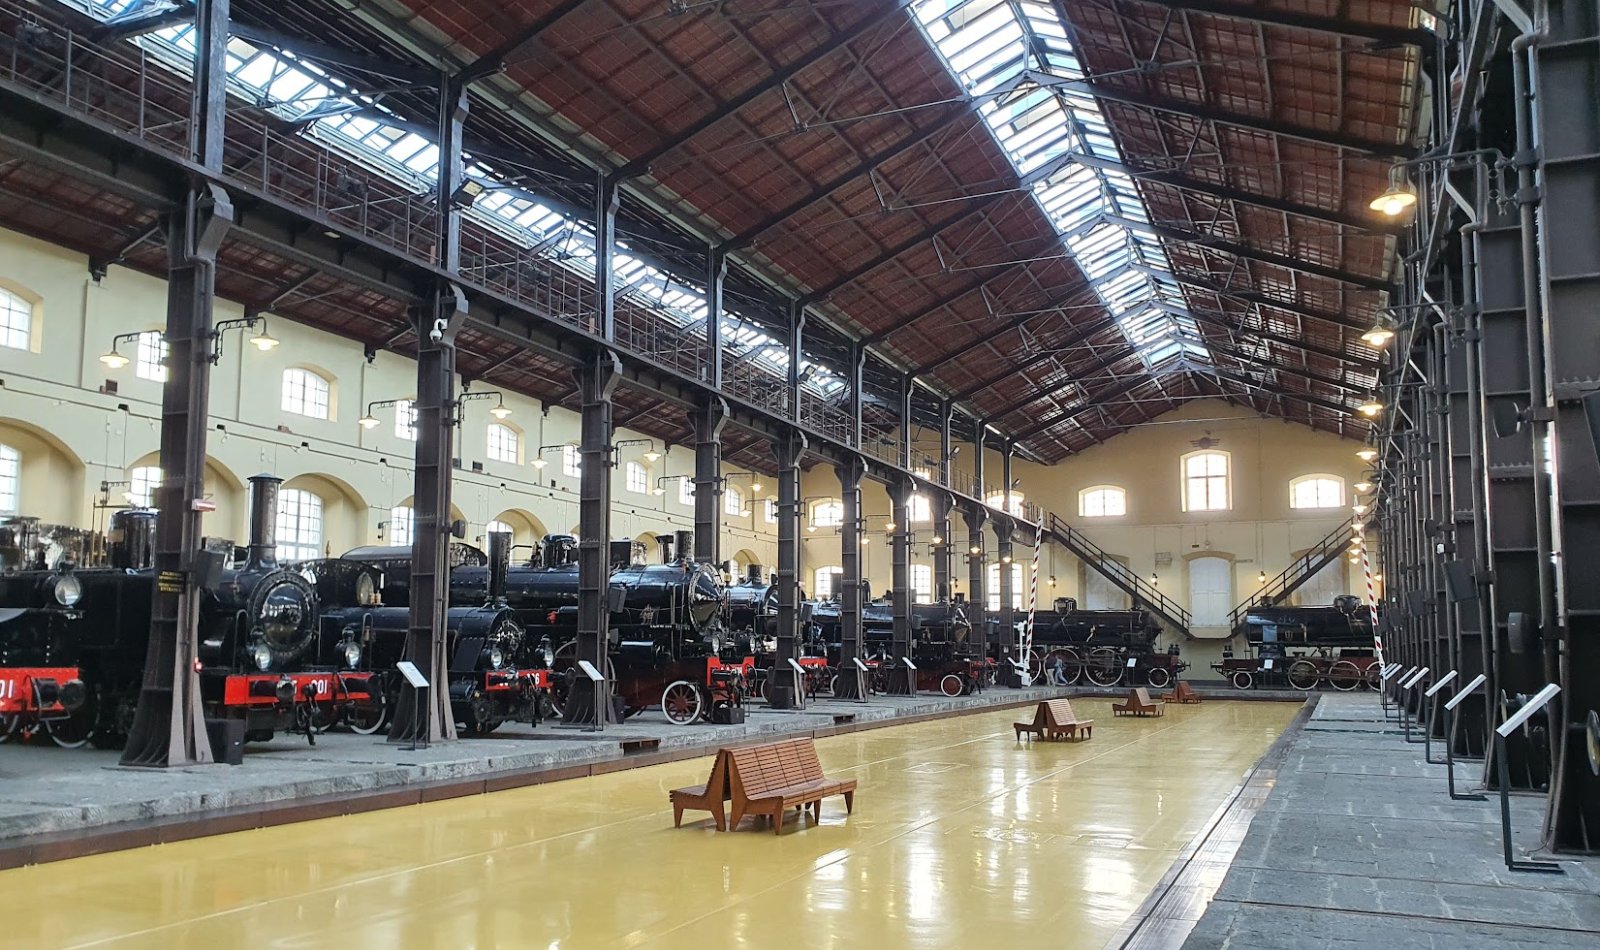 Museo Ferroviario di Pietrarsa, ingresso in offerta a 2 euro per 4 giorni